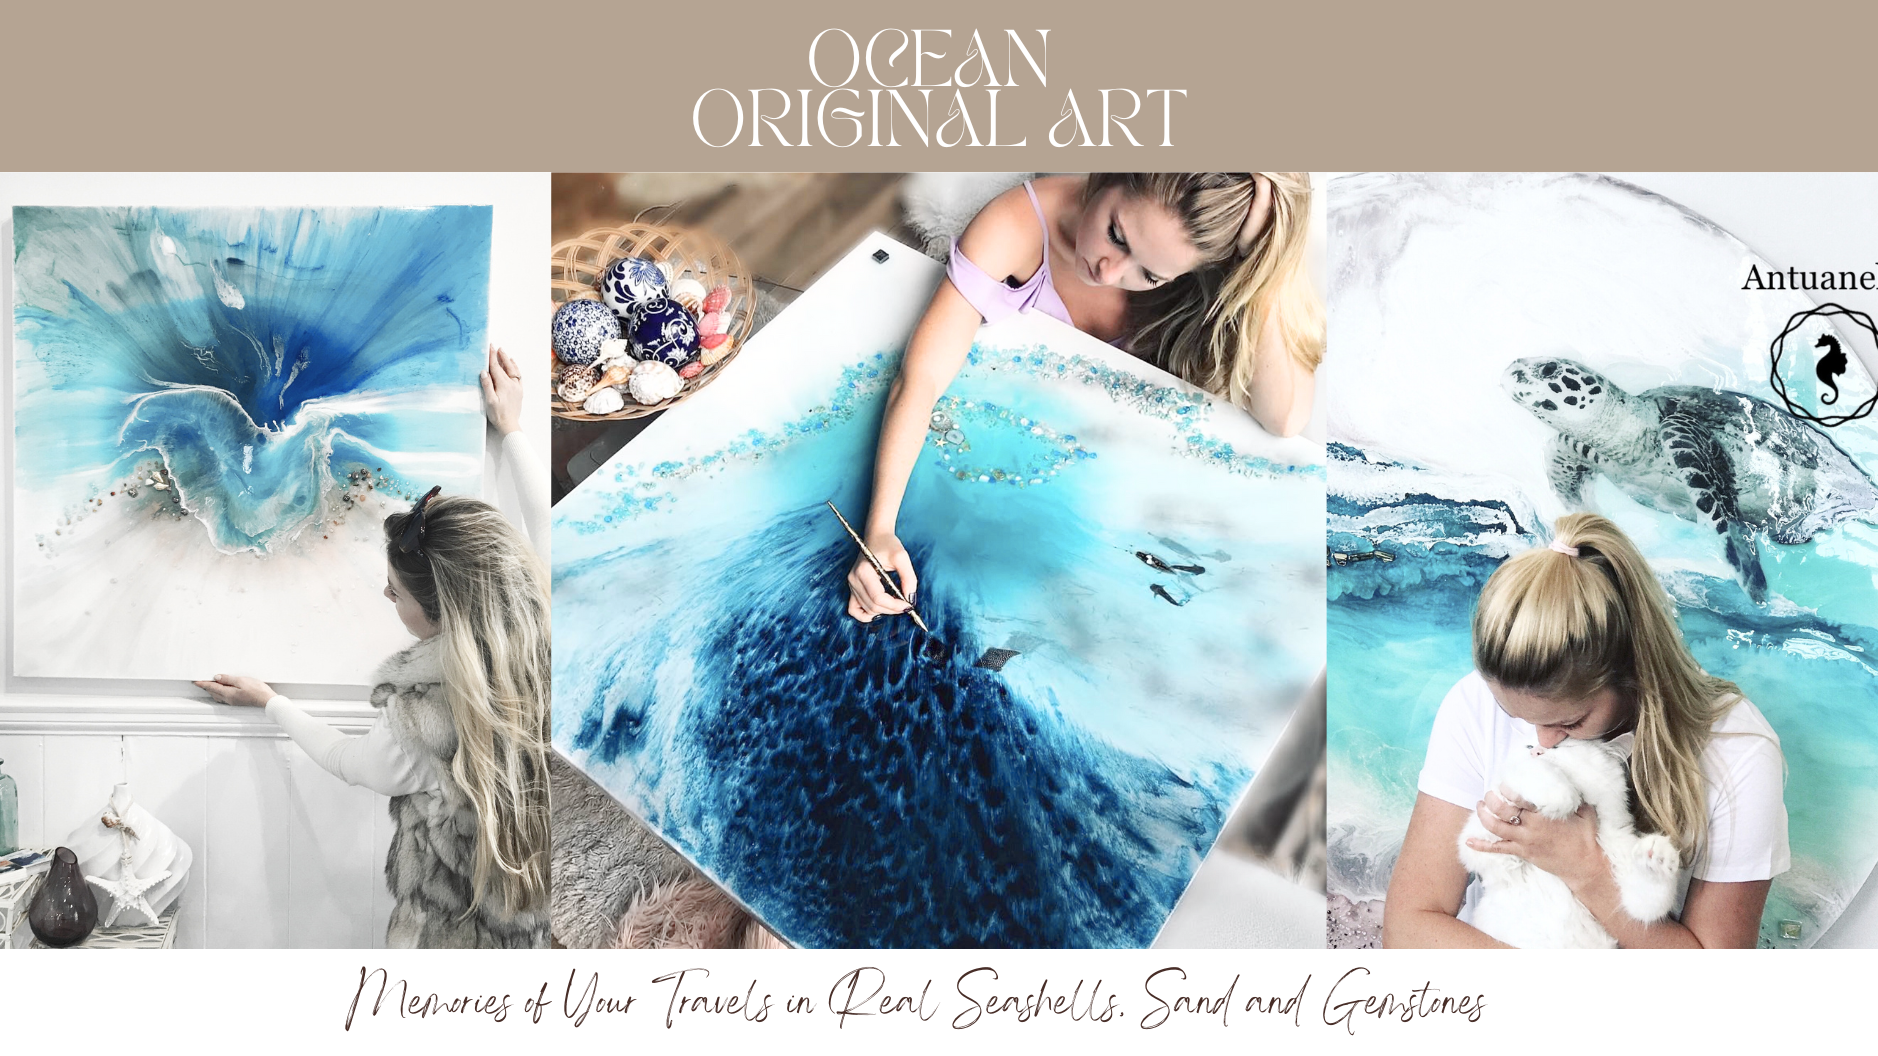 OCEAN ORIGINAL ART